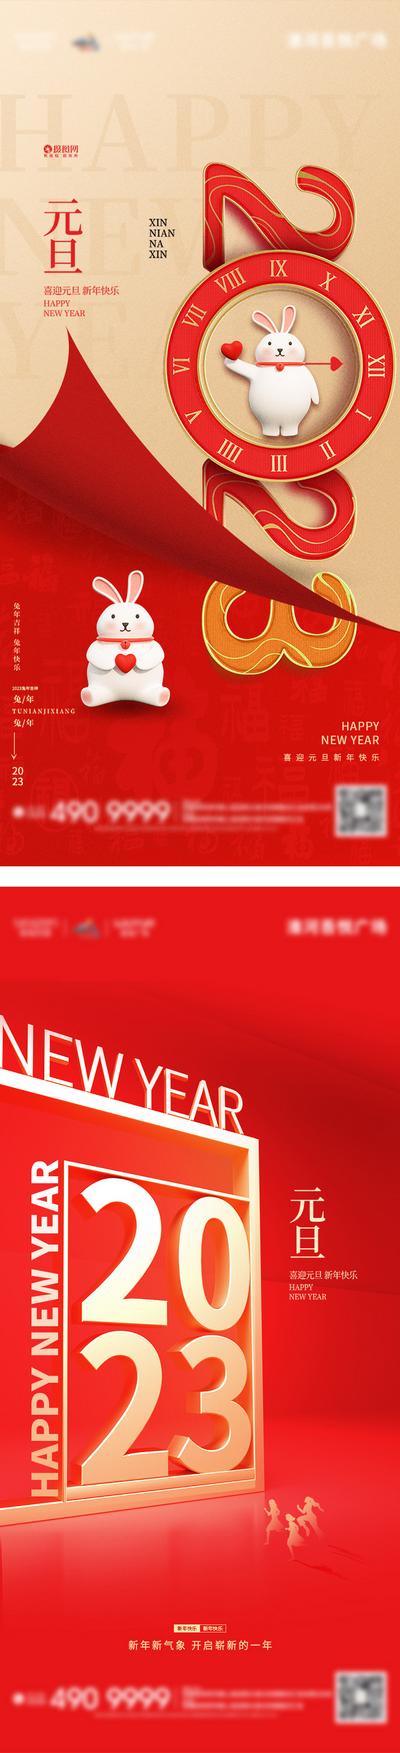 南门网 海报 地产 公历节日 元旦节 中国风 喜庆 春节 跨年